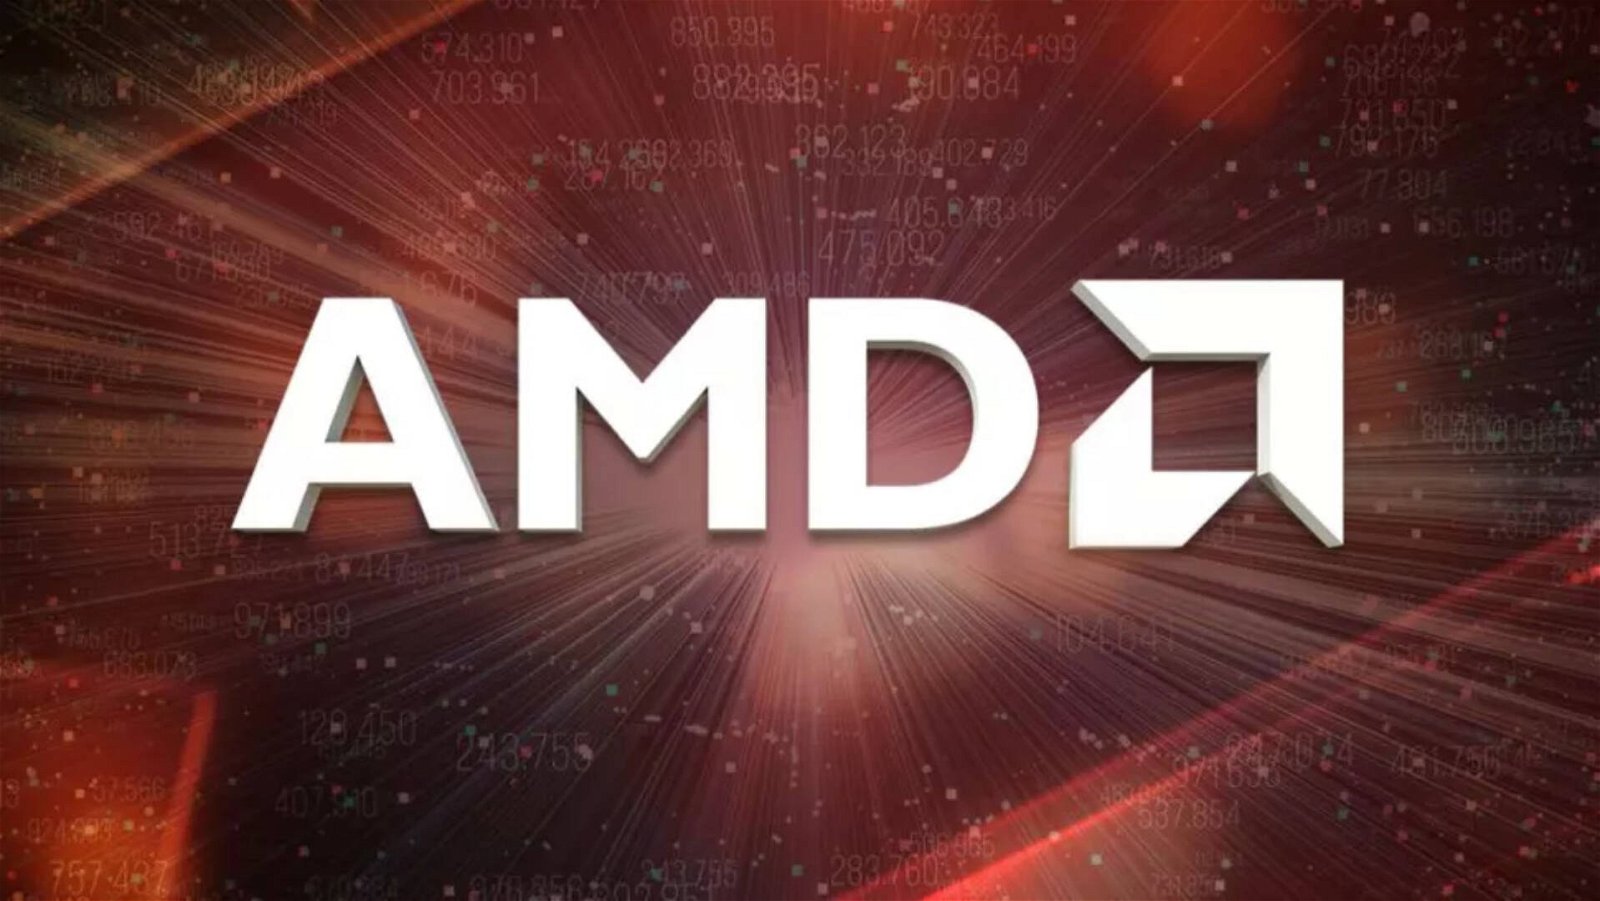 Immagine di AMD guarda al futuro con EPYC Genoa, Bergamo e Zen 4